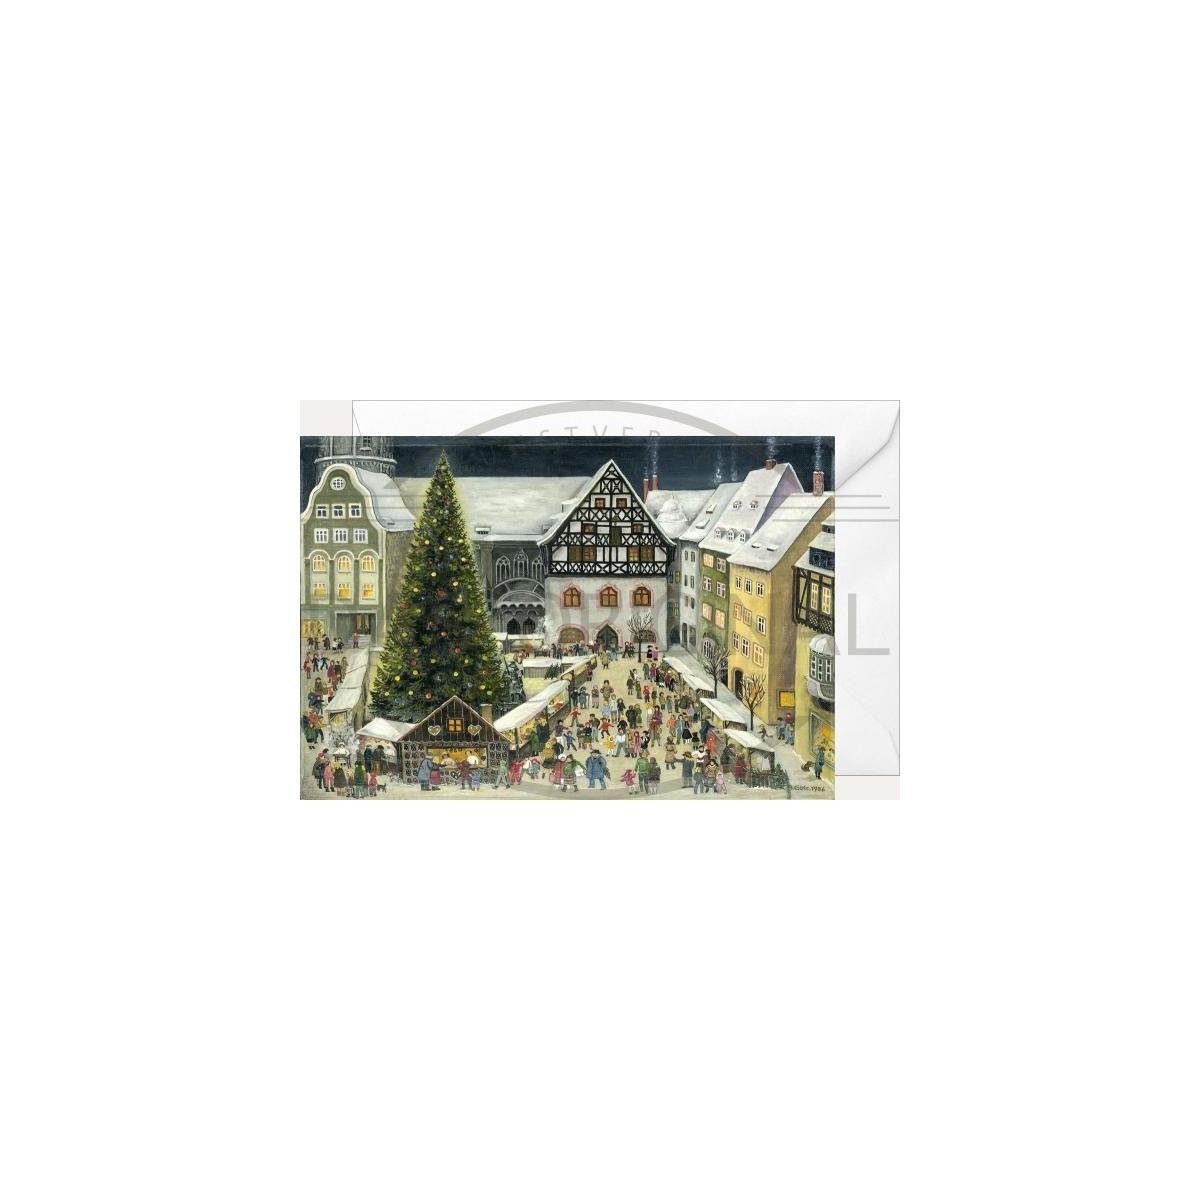 Olewinski & Tochter Grußkarte 2937 - Weihnachtsklappkarte - Jena Weihnachtsmarkt